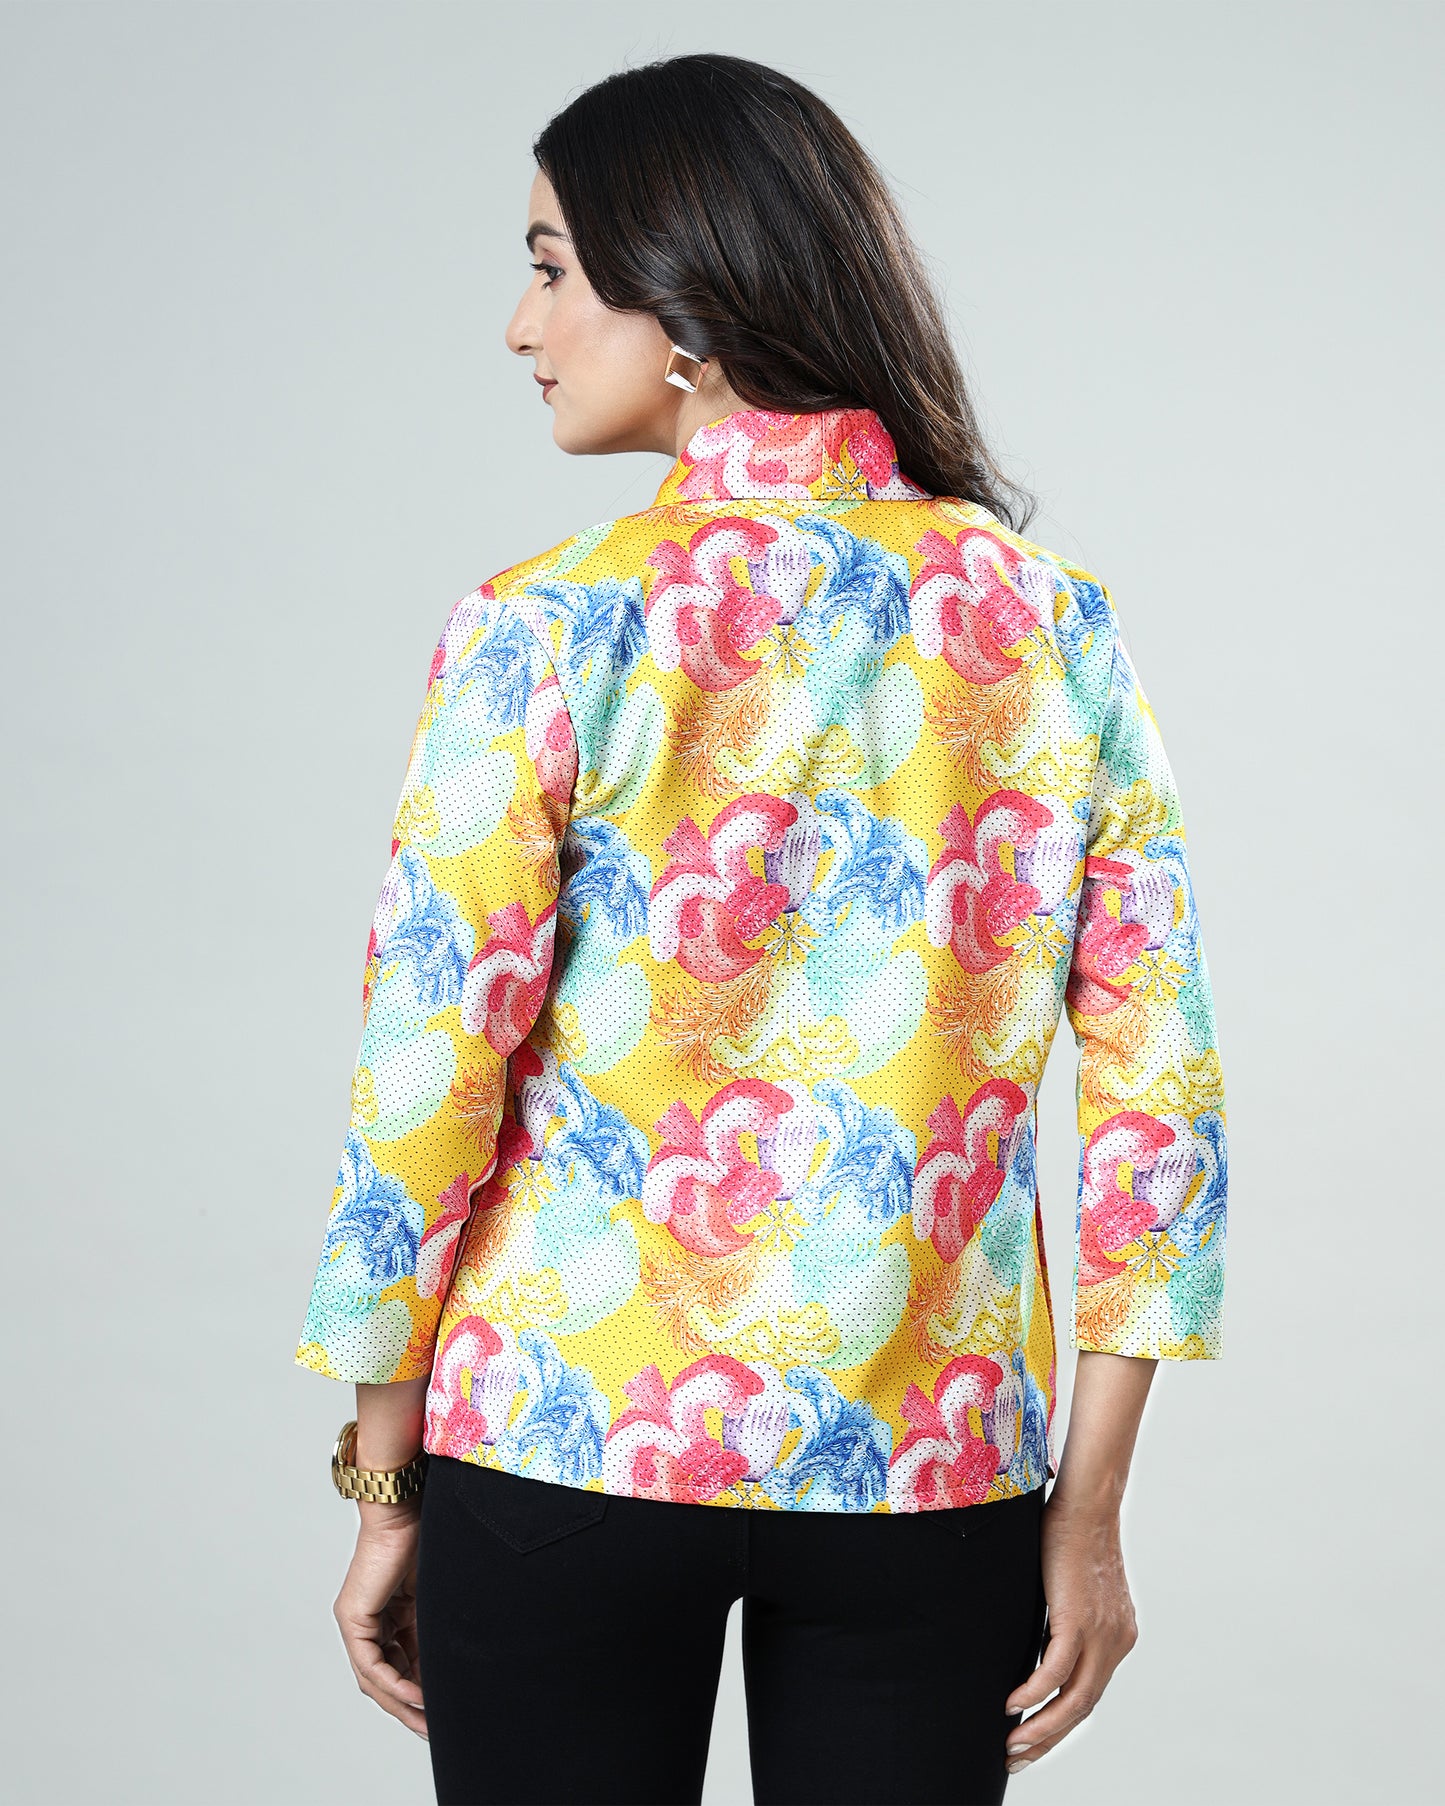 Fan Favorite: The #1 Selling Women's Floral Jacket